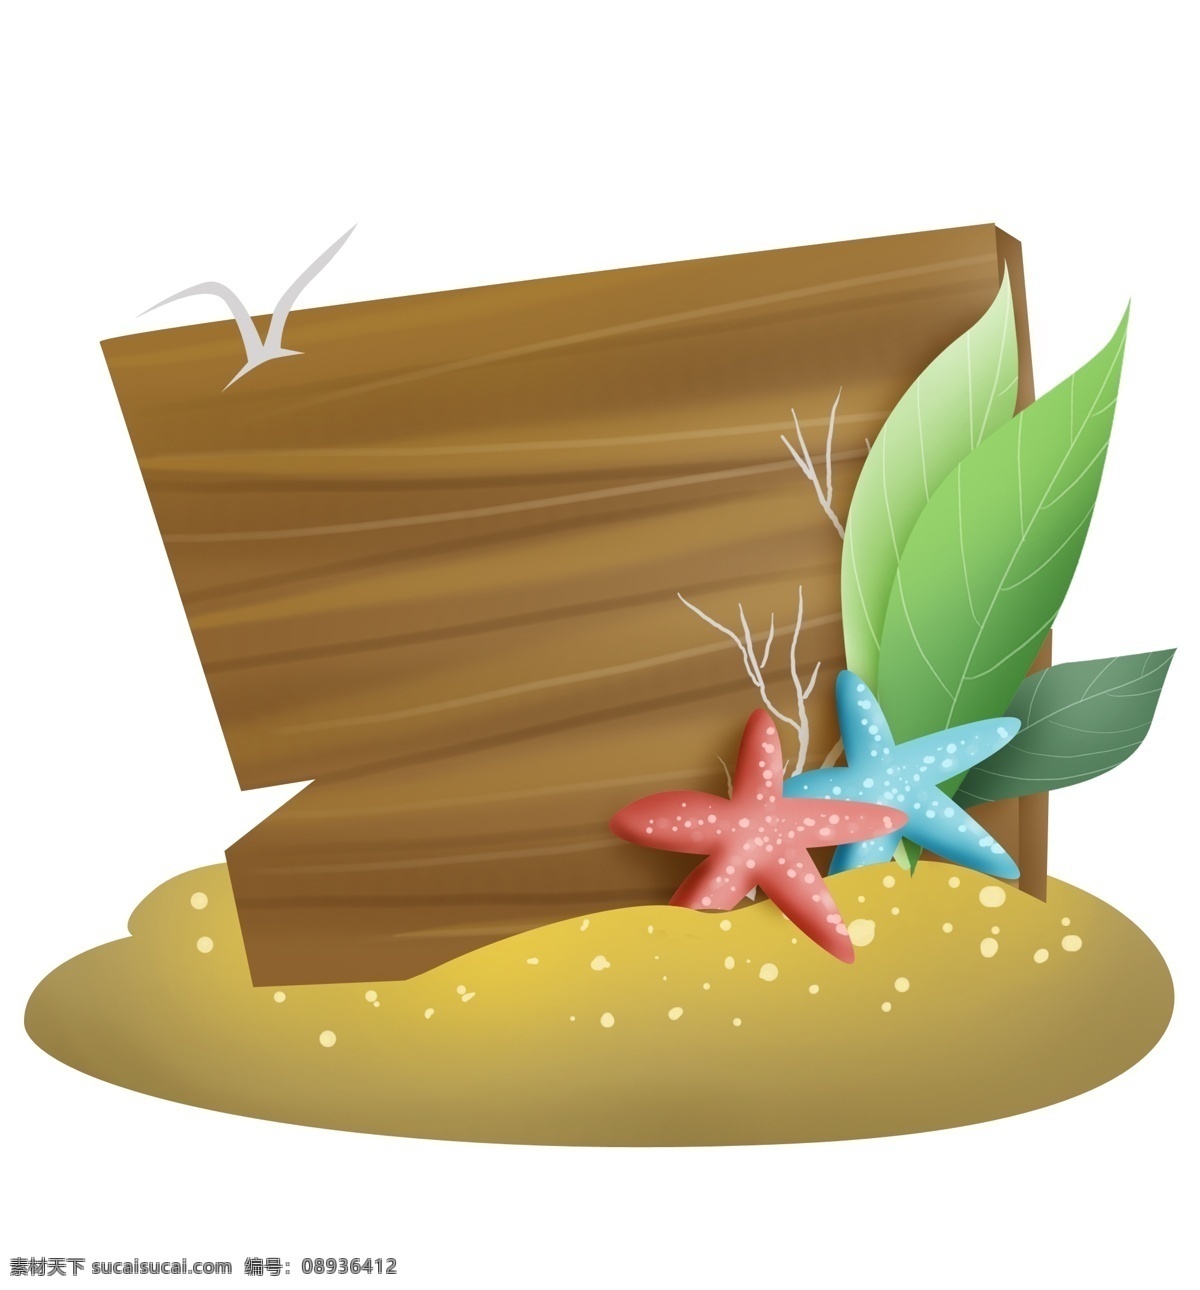 沙滩 海星 木板 提示 框 海岛 旅游 模板 文本 海星提示框 木纹 标题